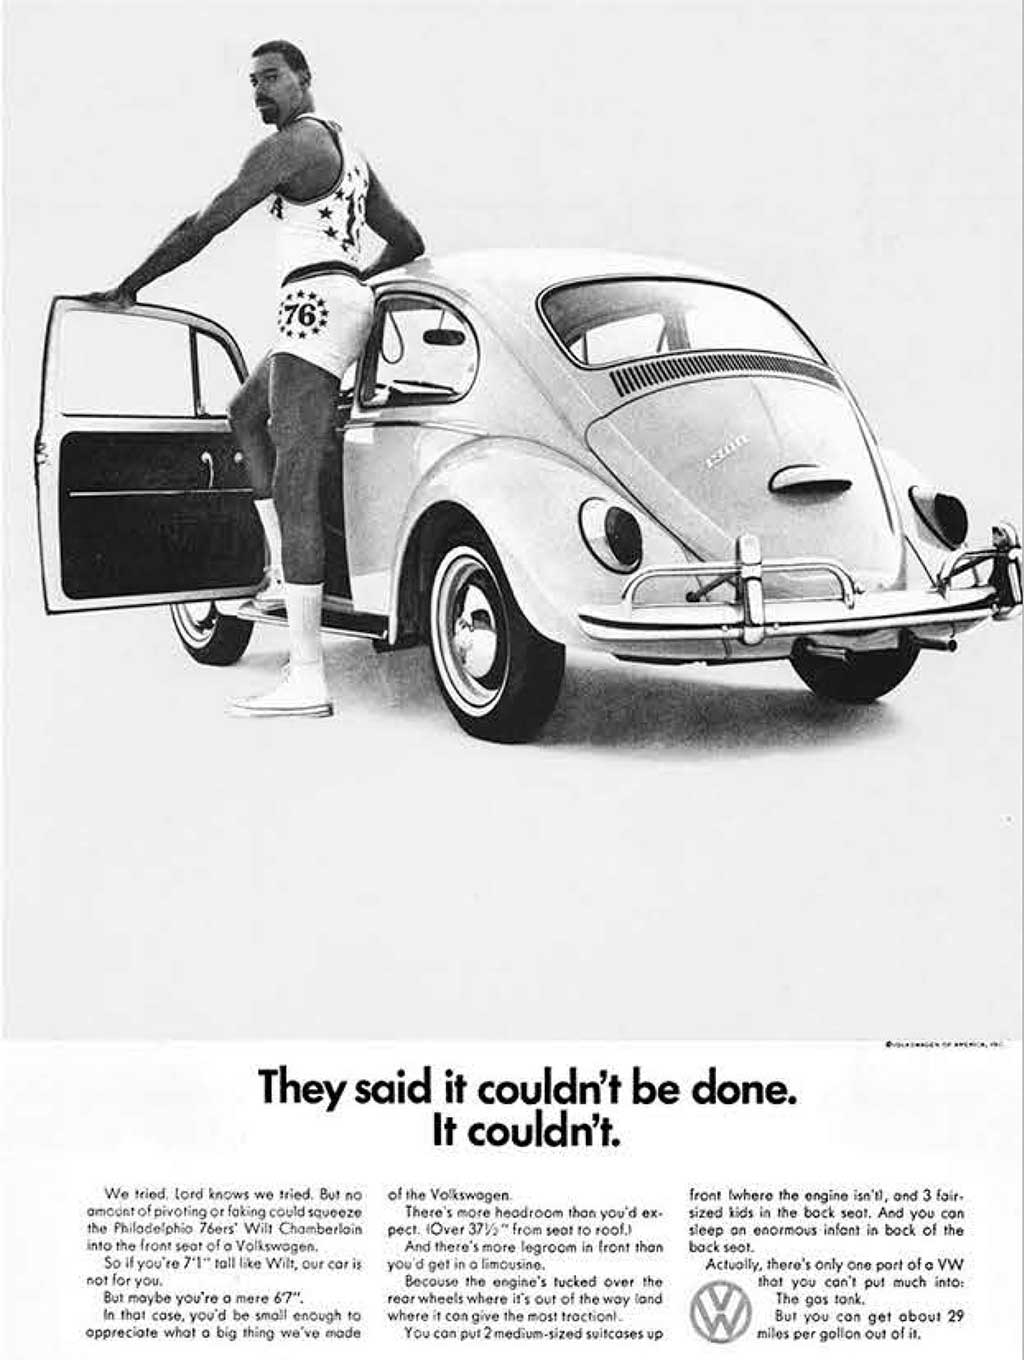 VW Bug with Wilt Chamberlain